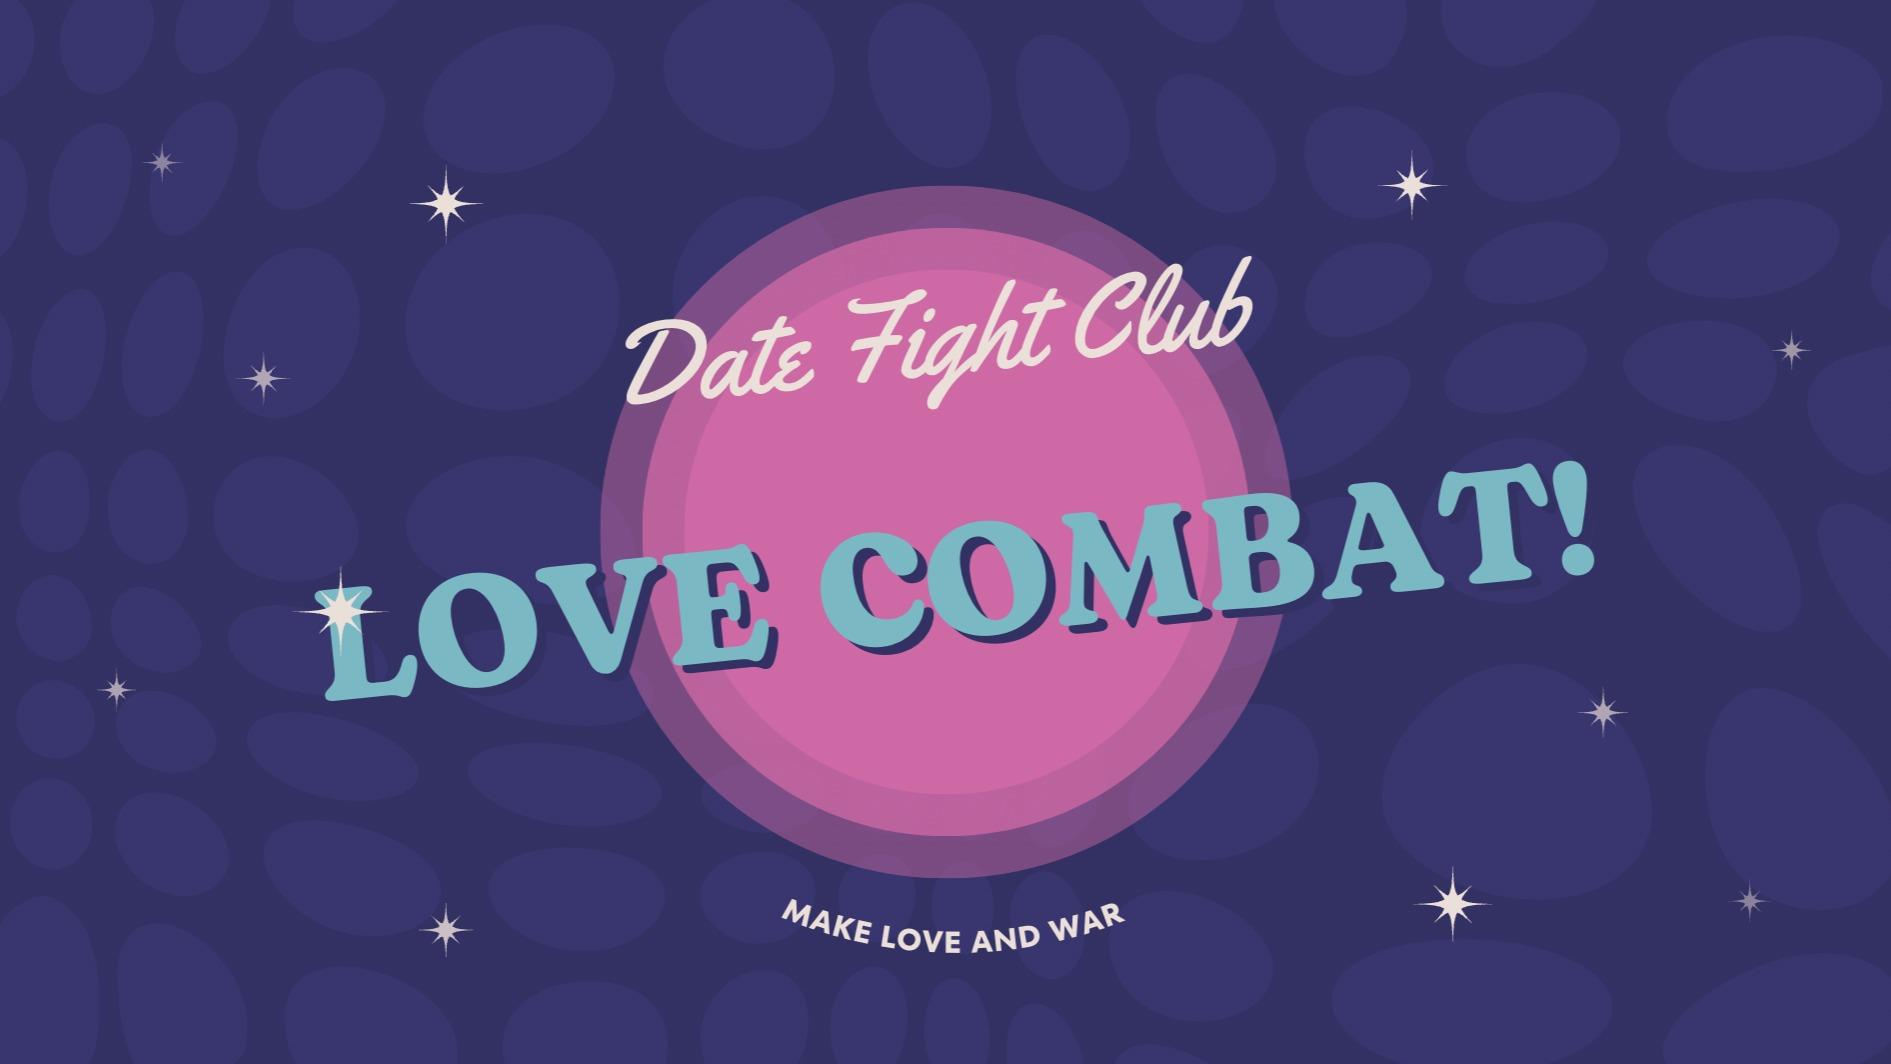 Date Fight Club Love Combat